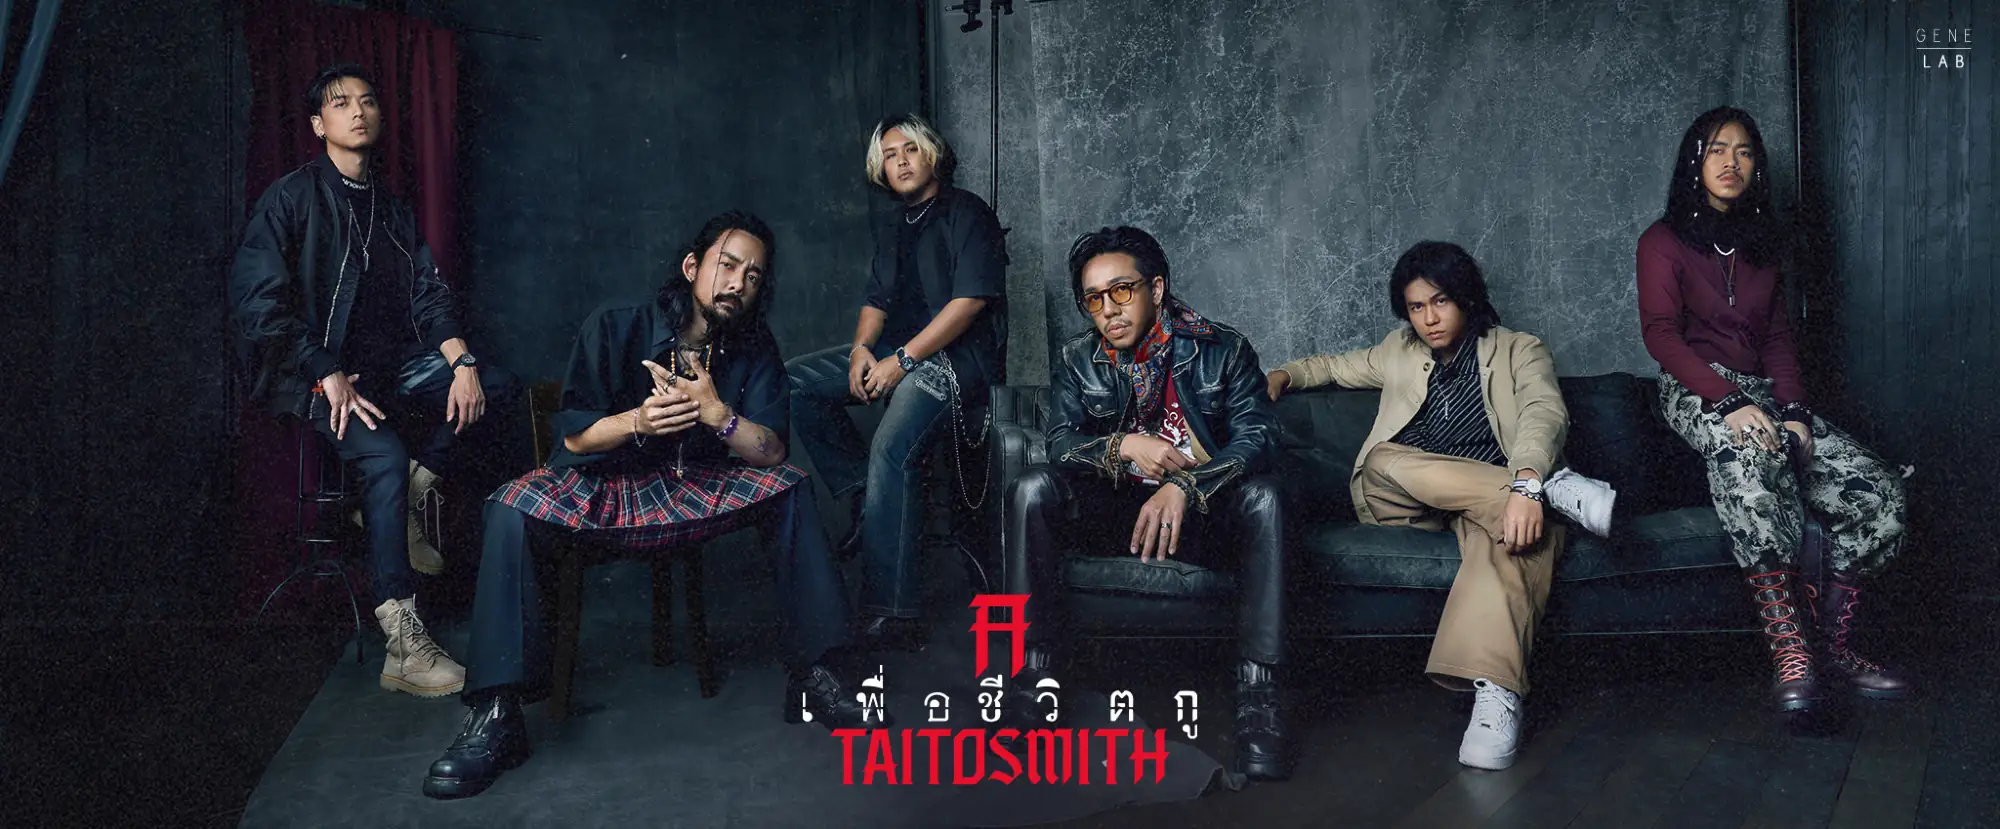 泰国乐队TaitosmitH由6位成员组合而成（图片来源：官方脸书粉丝专页）